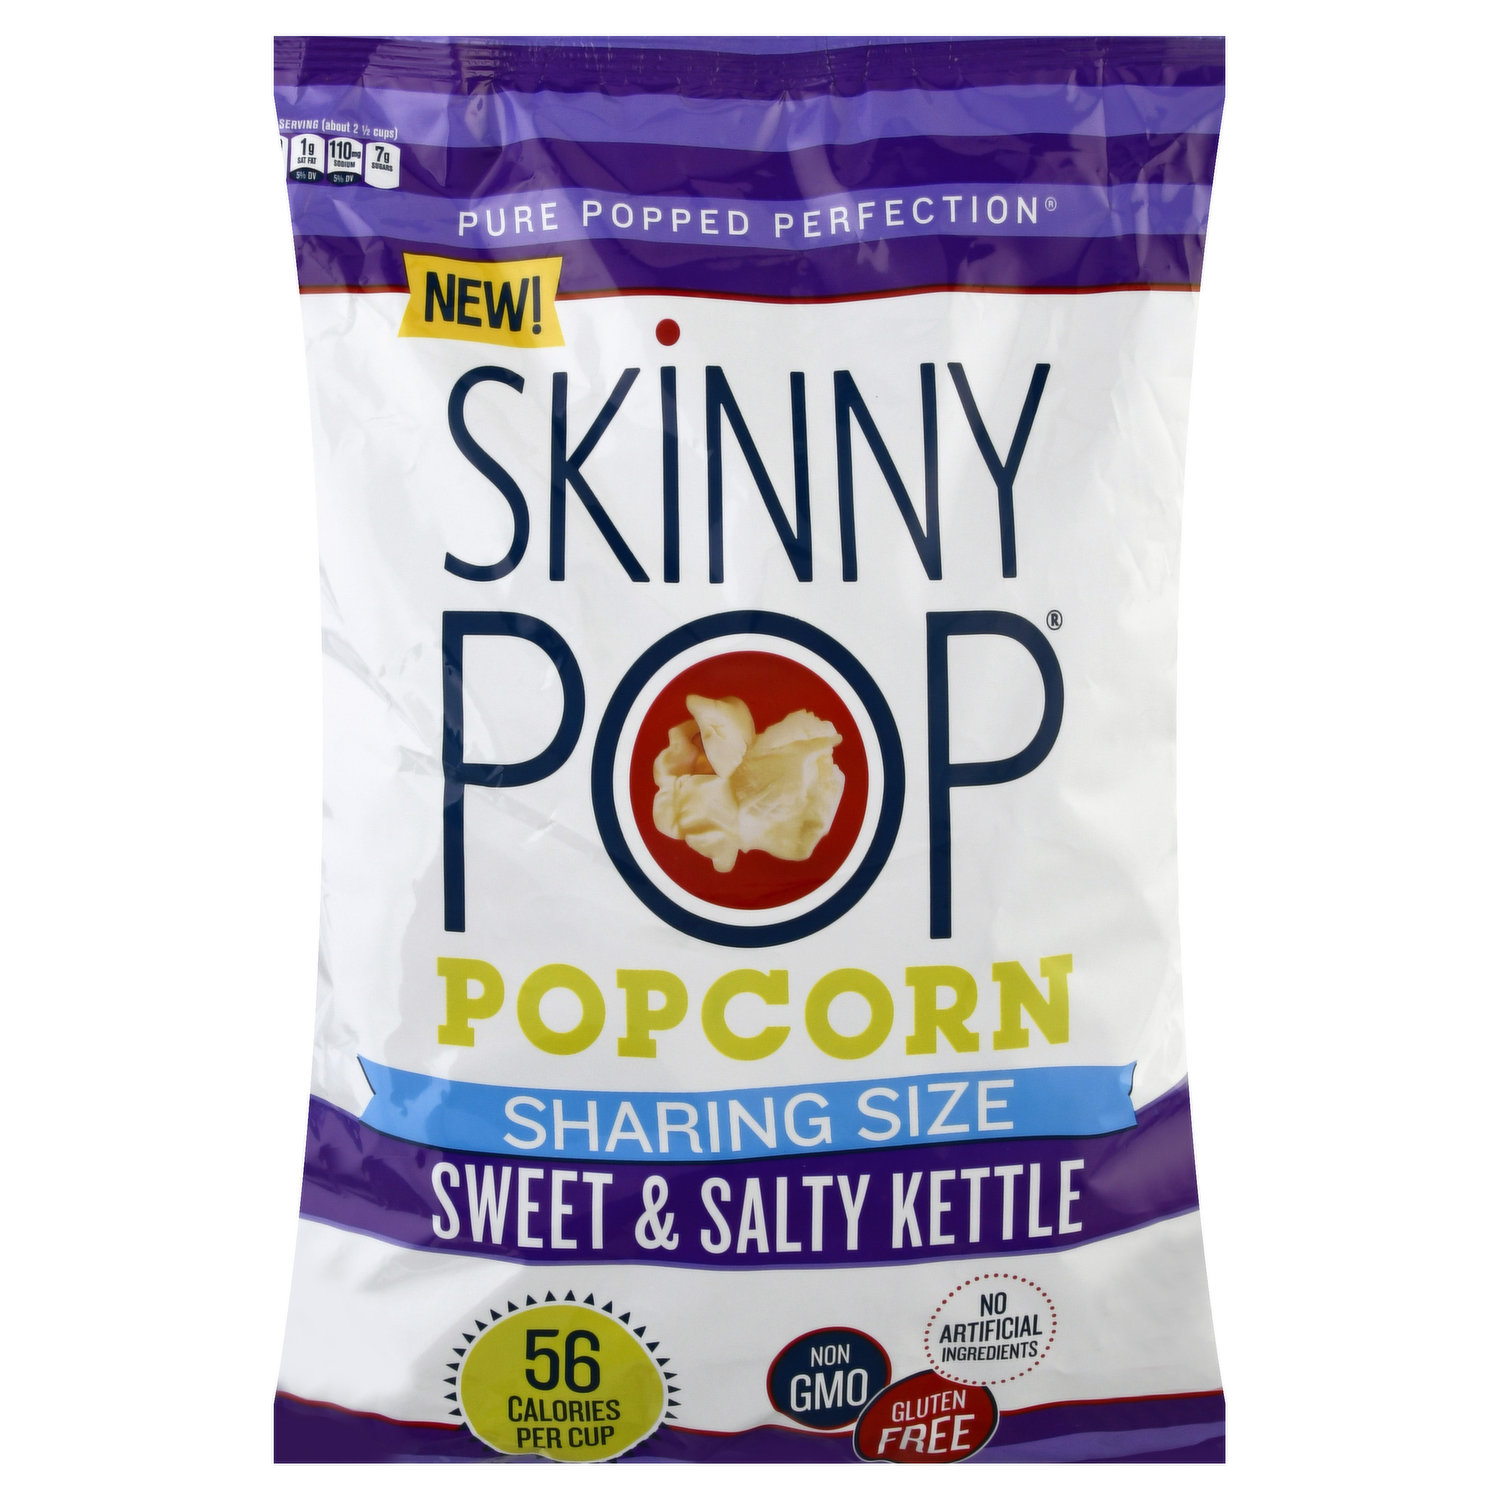 Skinny Pop Popcorn, Sweet & Salty Kettle, Sharing Size